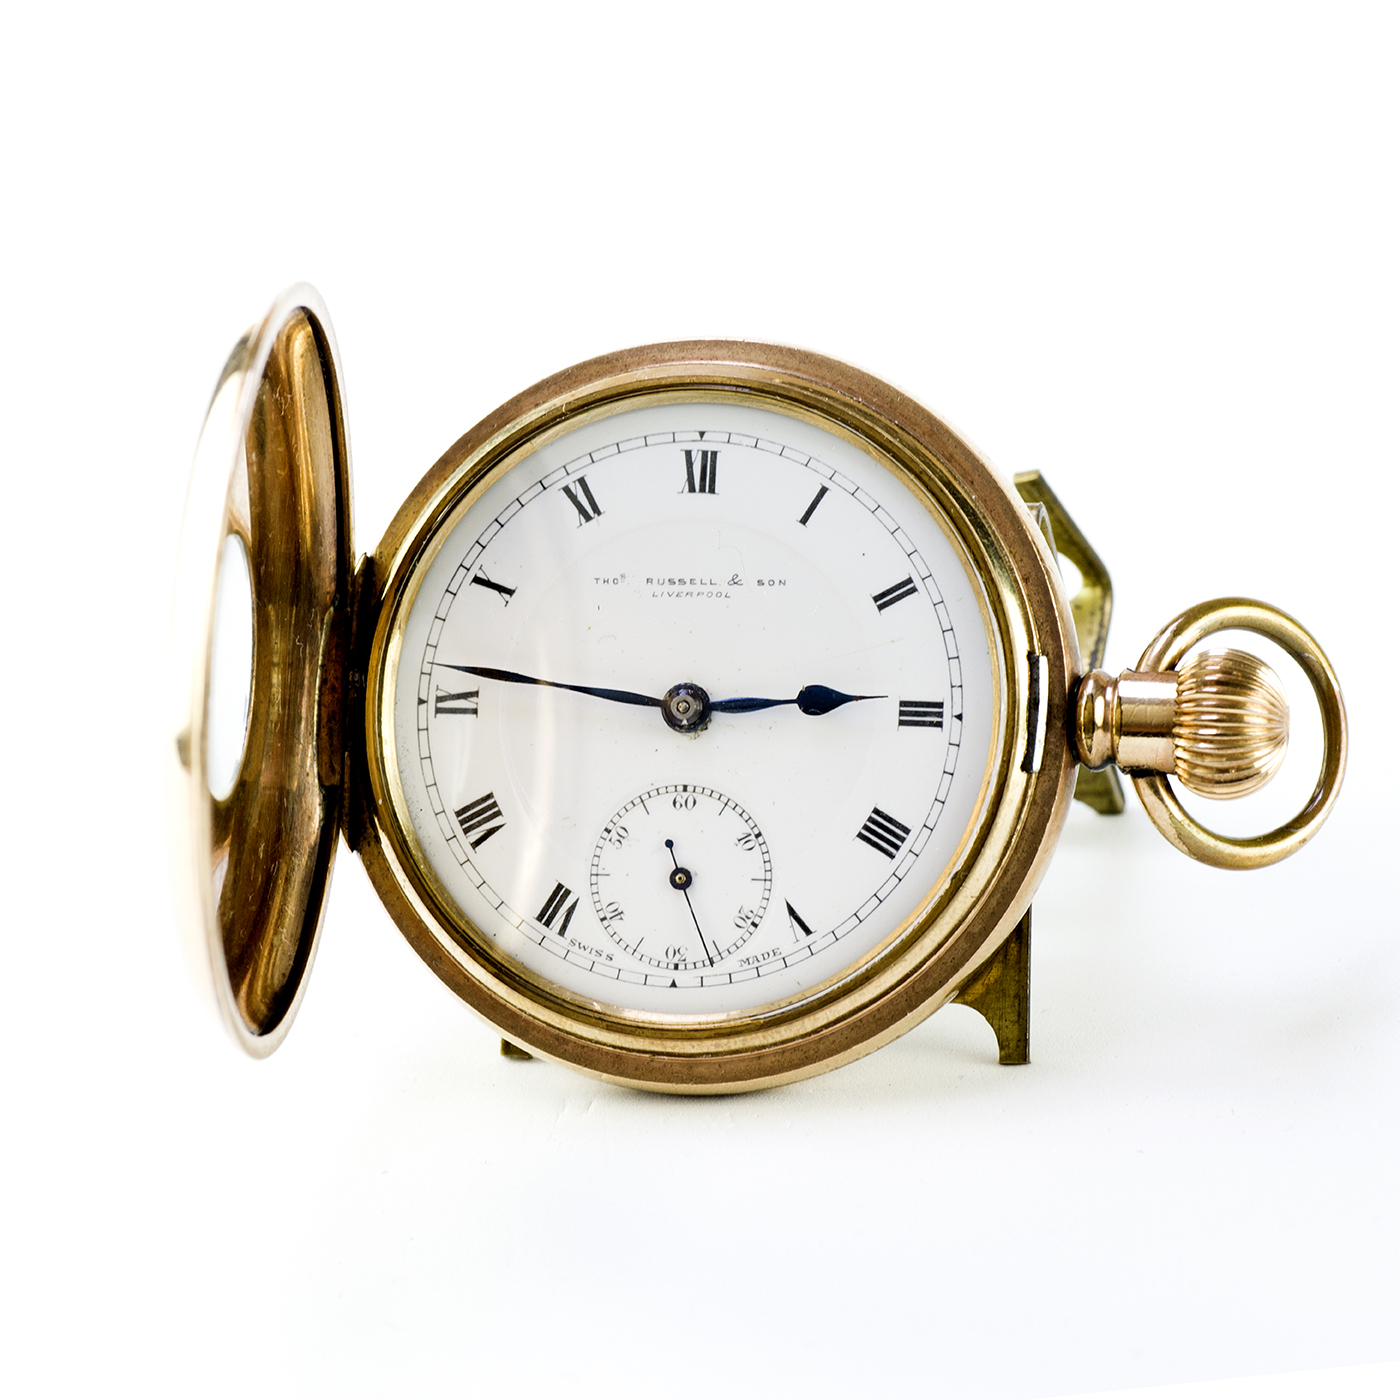 THOMAS RUSSELL & SON (Liverpool). Reloj de bolsillo, 1/2 saboneta (cazador), remontoir. Suiza, ca. 1880.